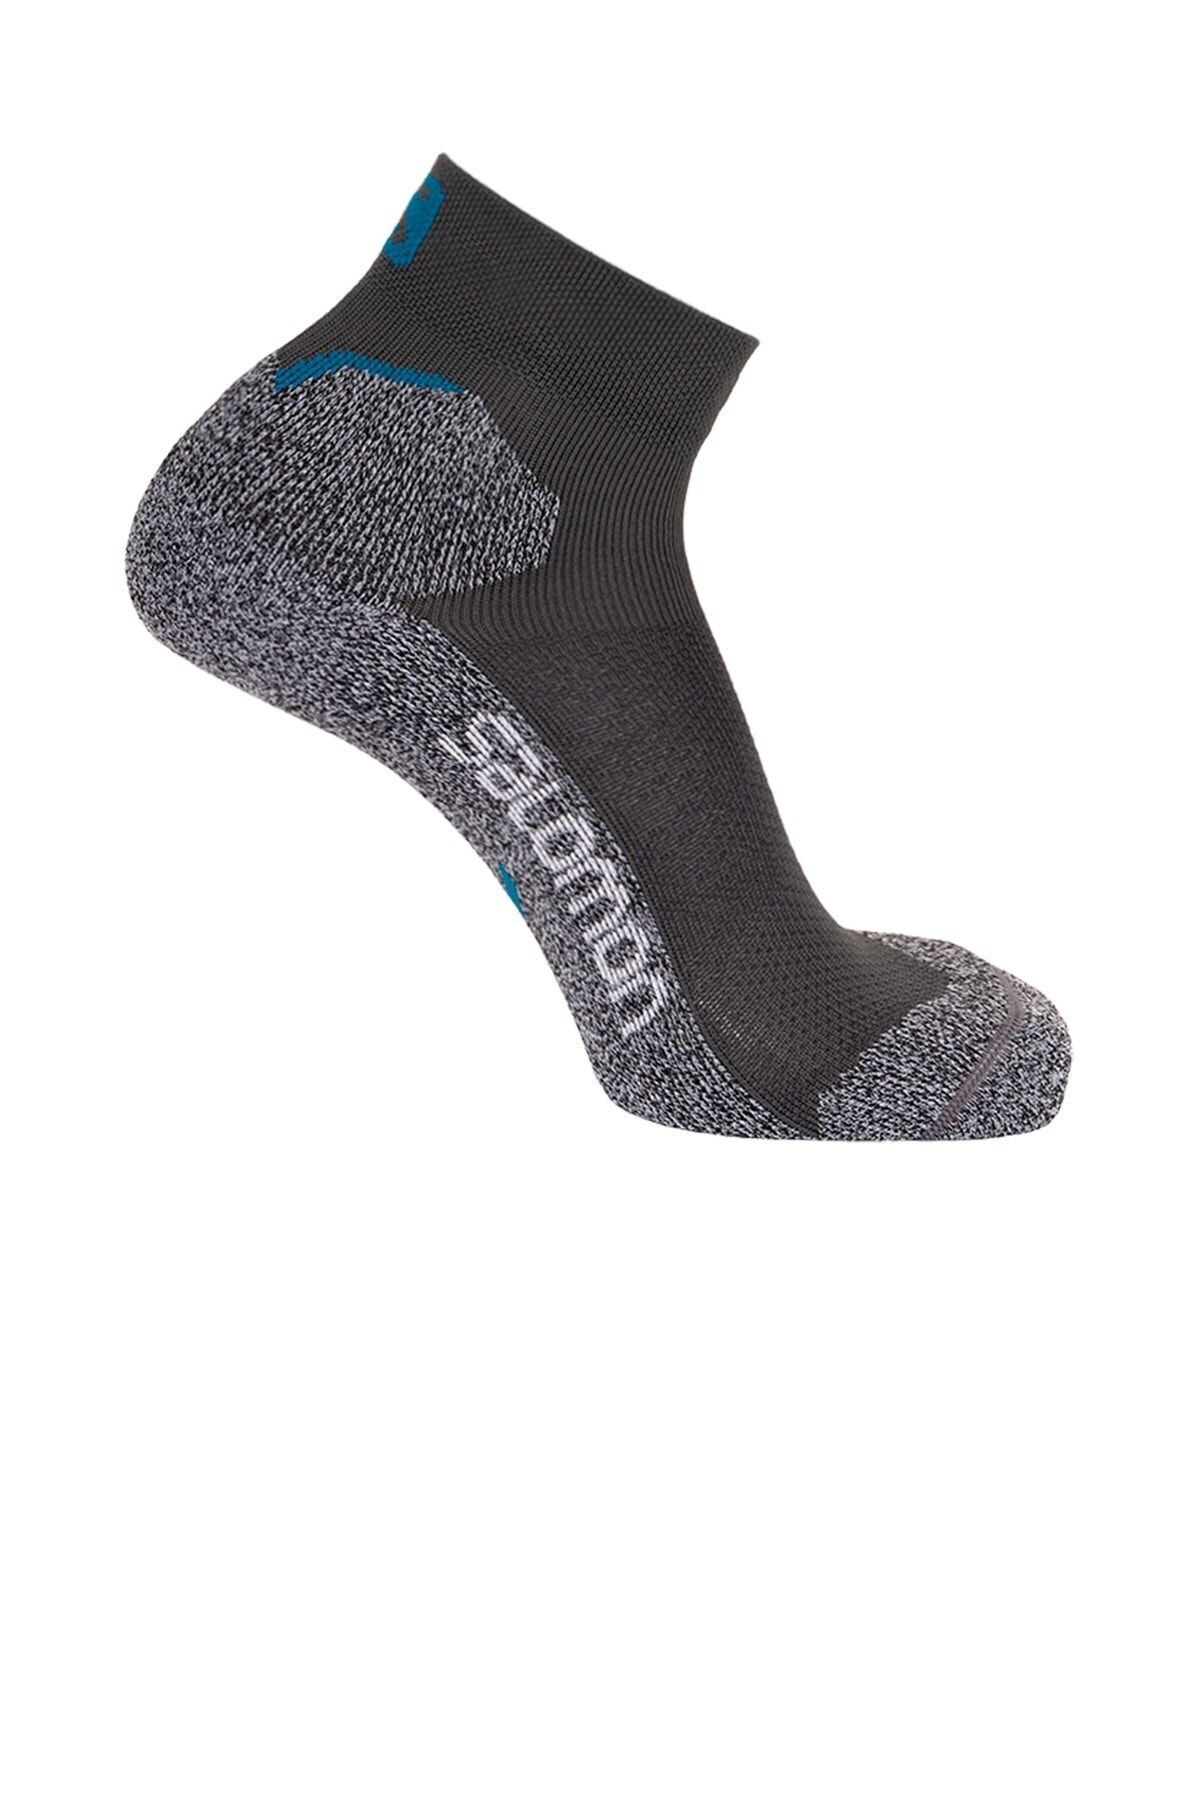 Salomon Speedcross Ankle Çorap Lc17810